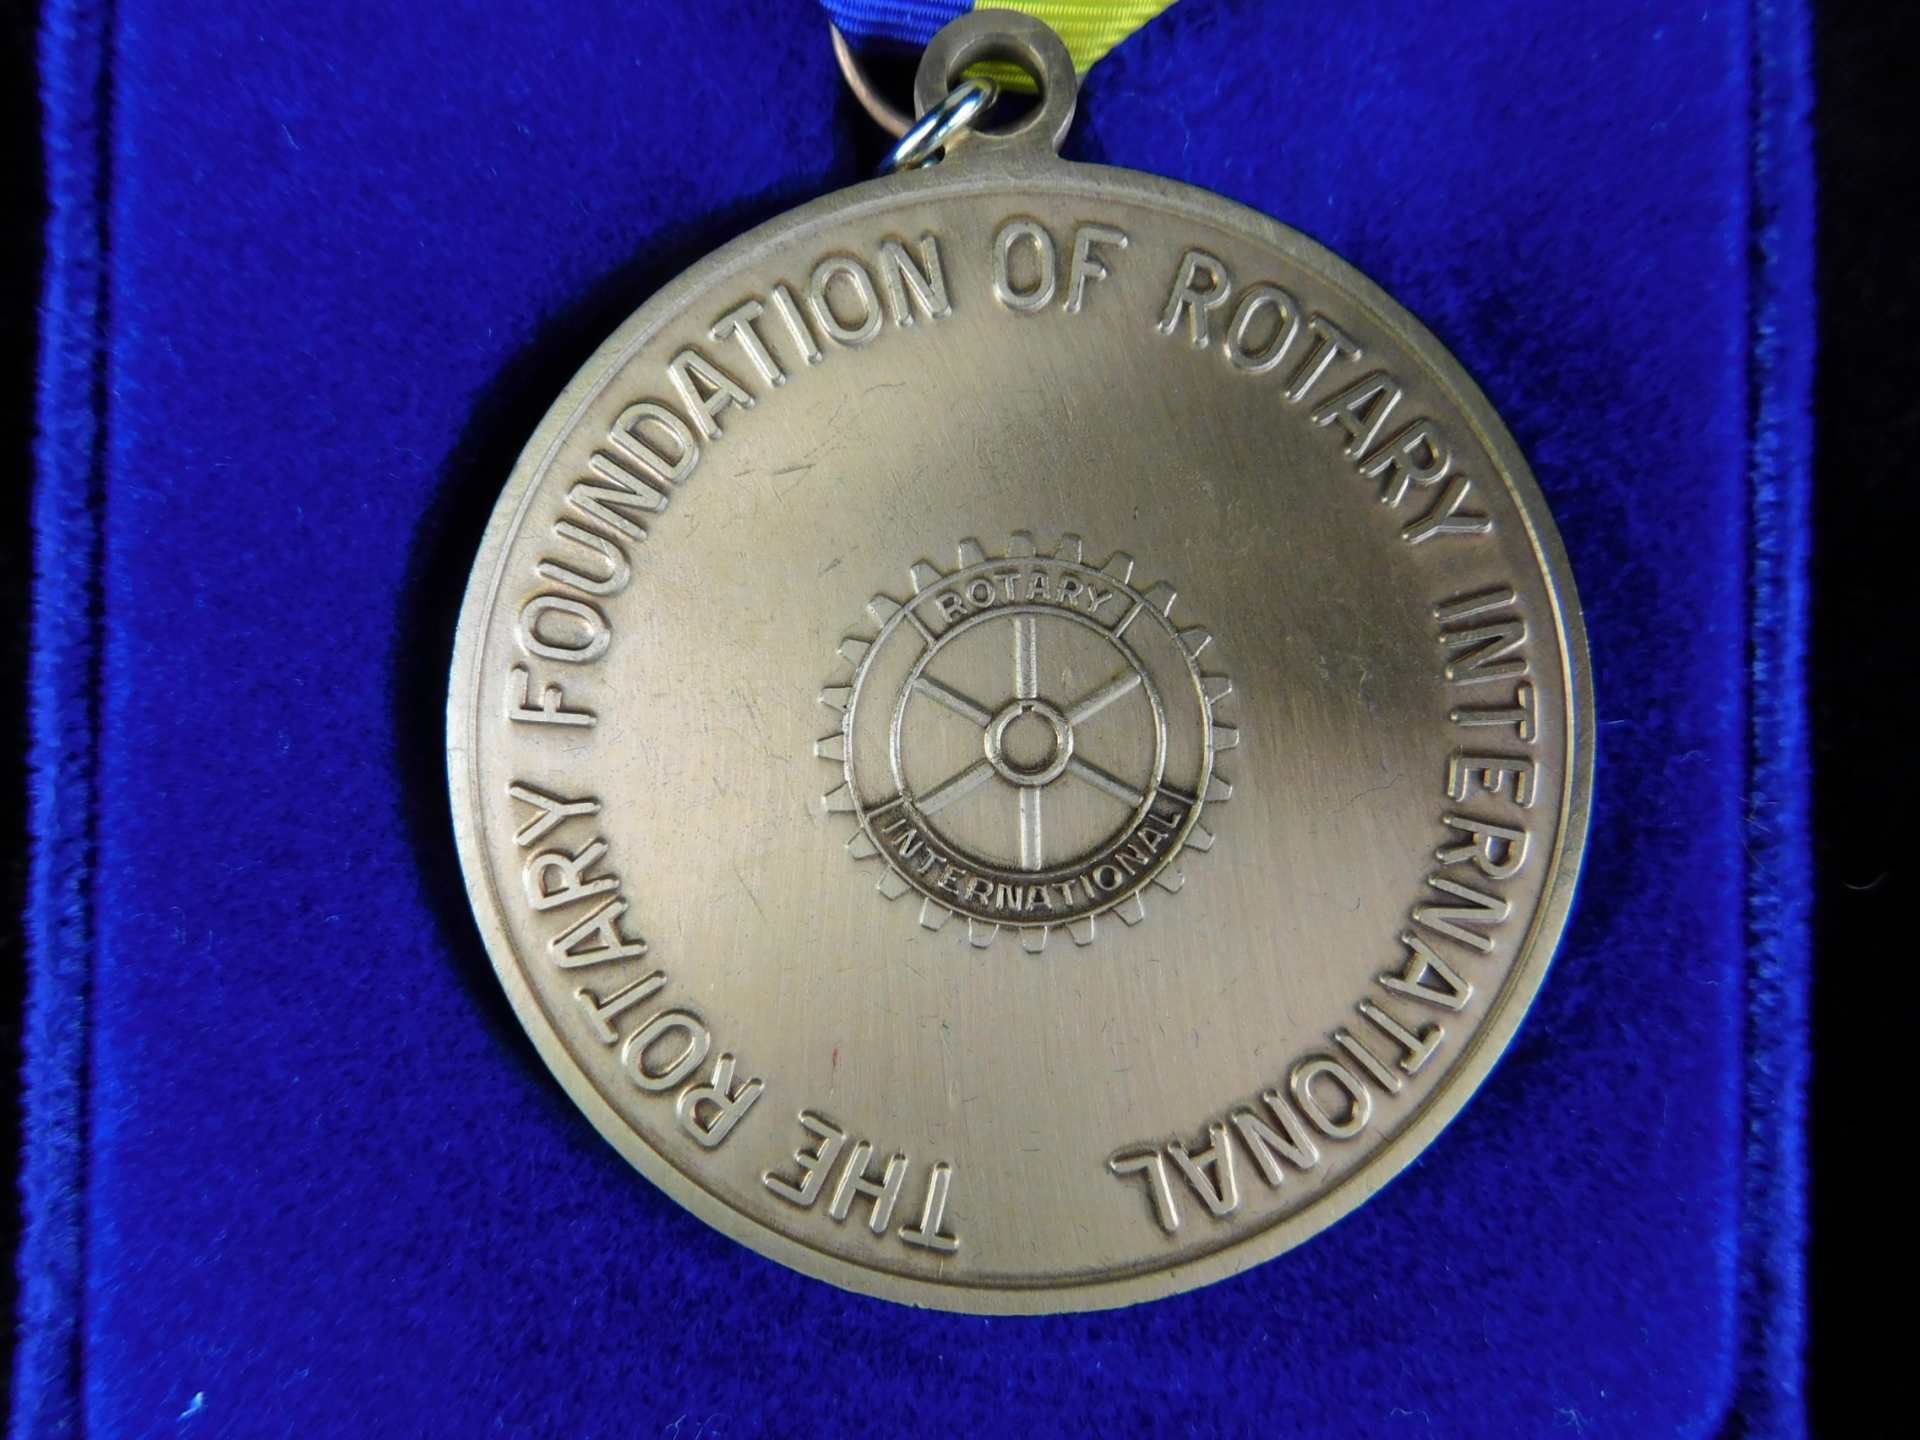 Rotary International Club Medaillien i. Verleihungsschatulle plus Album, Inschrift Paul Harris F - Bild 4 aus 5